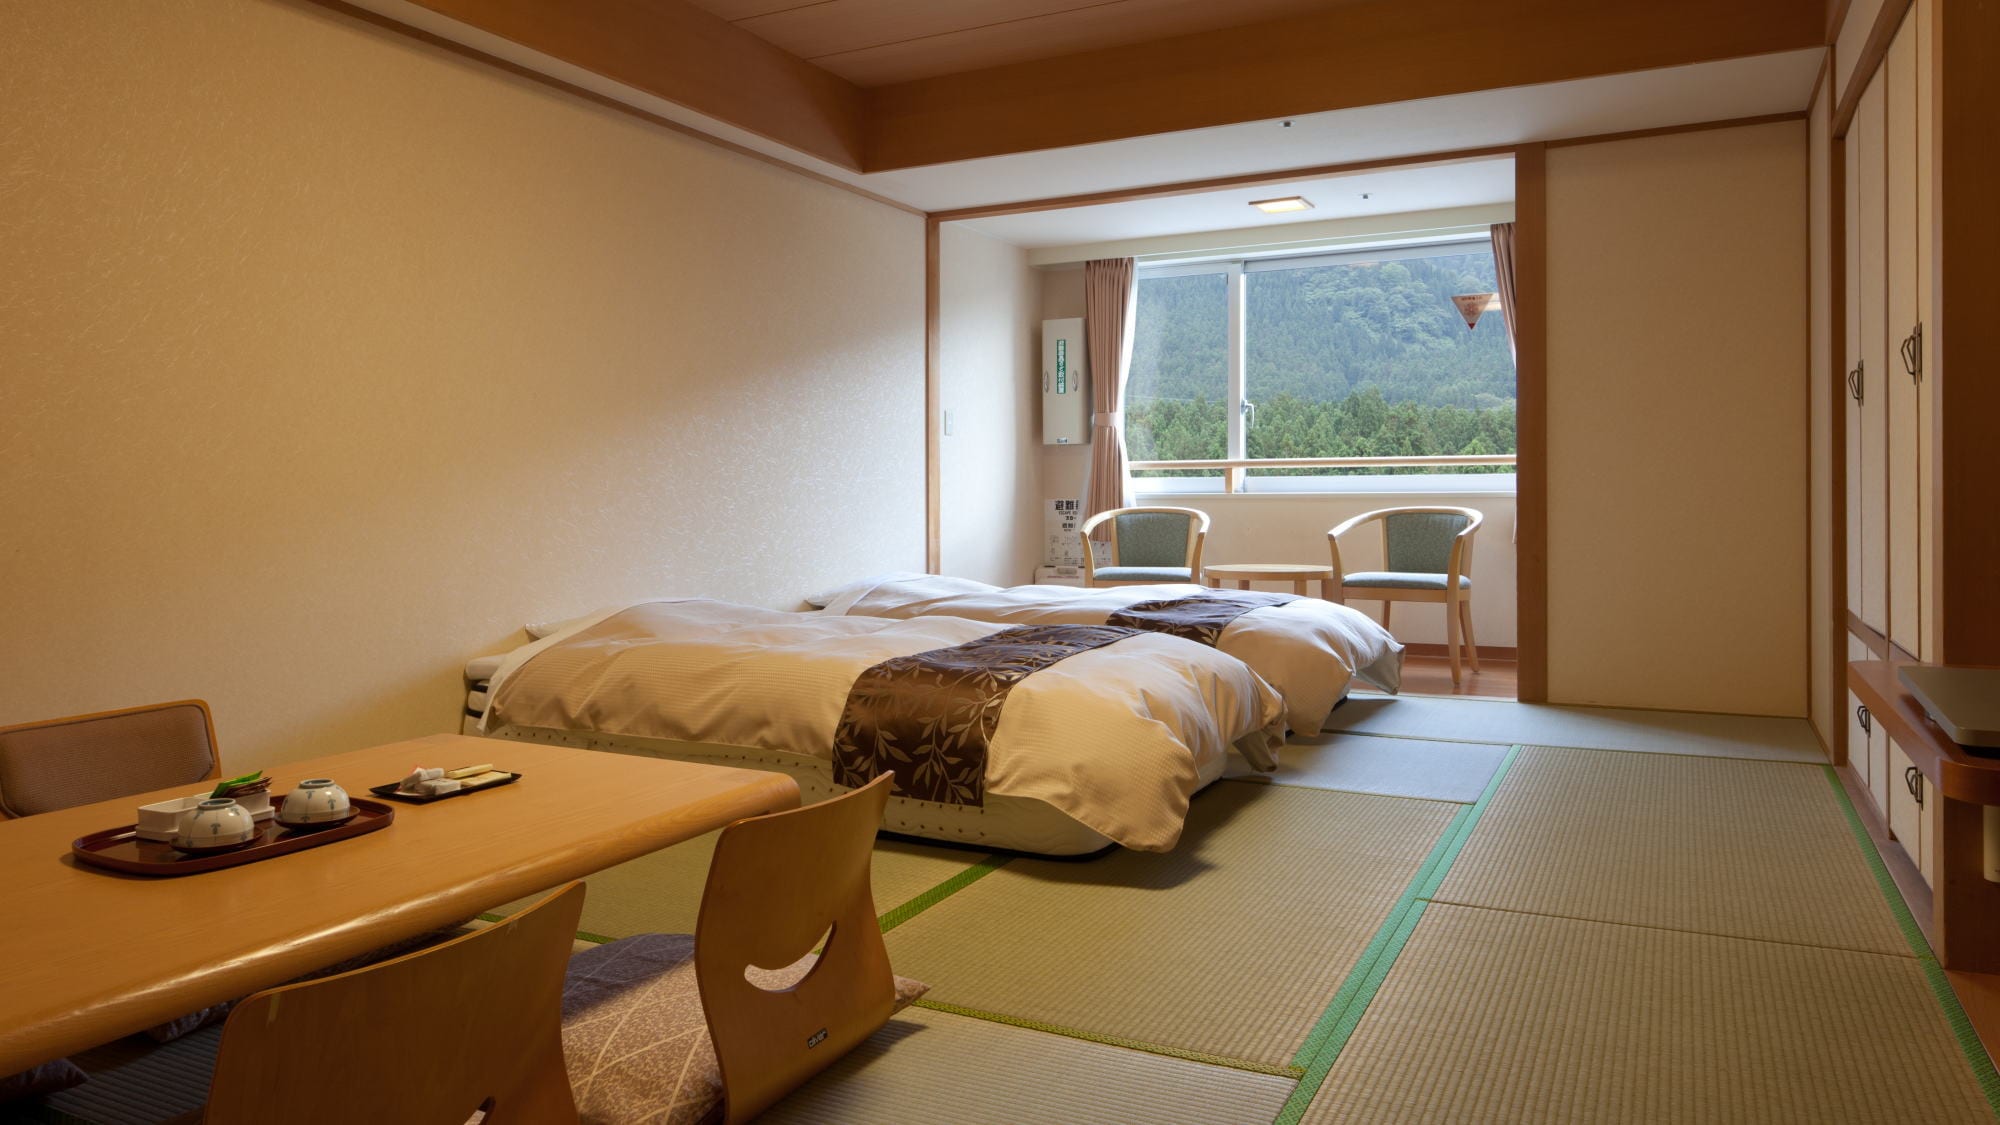 [Kembar 12 tikar tatami kamar gaya Jepang di gedung utama] Kamar gaya Jepang dengan beranda lebar dan dua tempat tidur single.